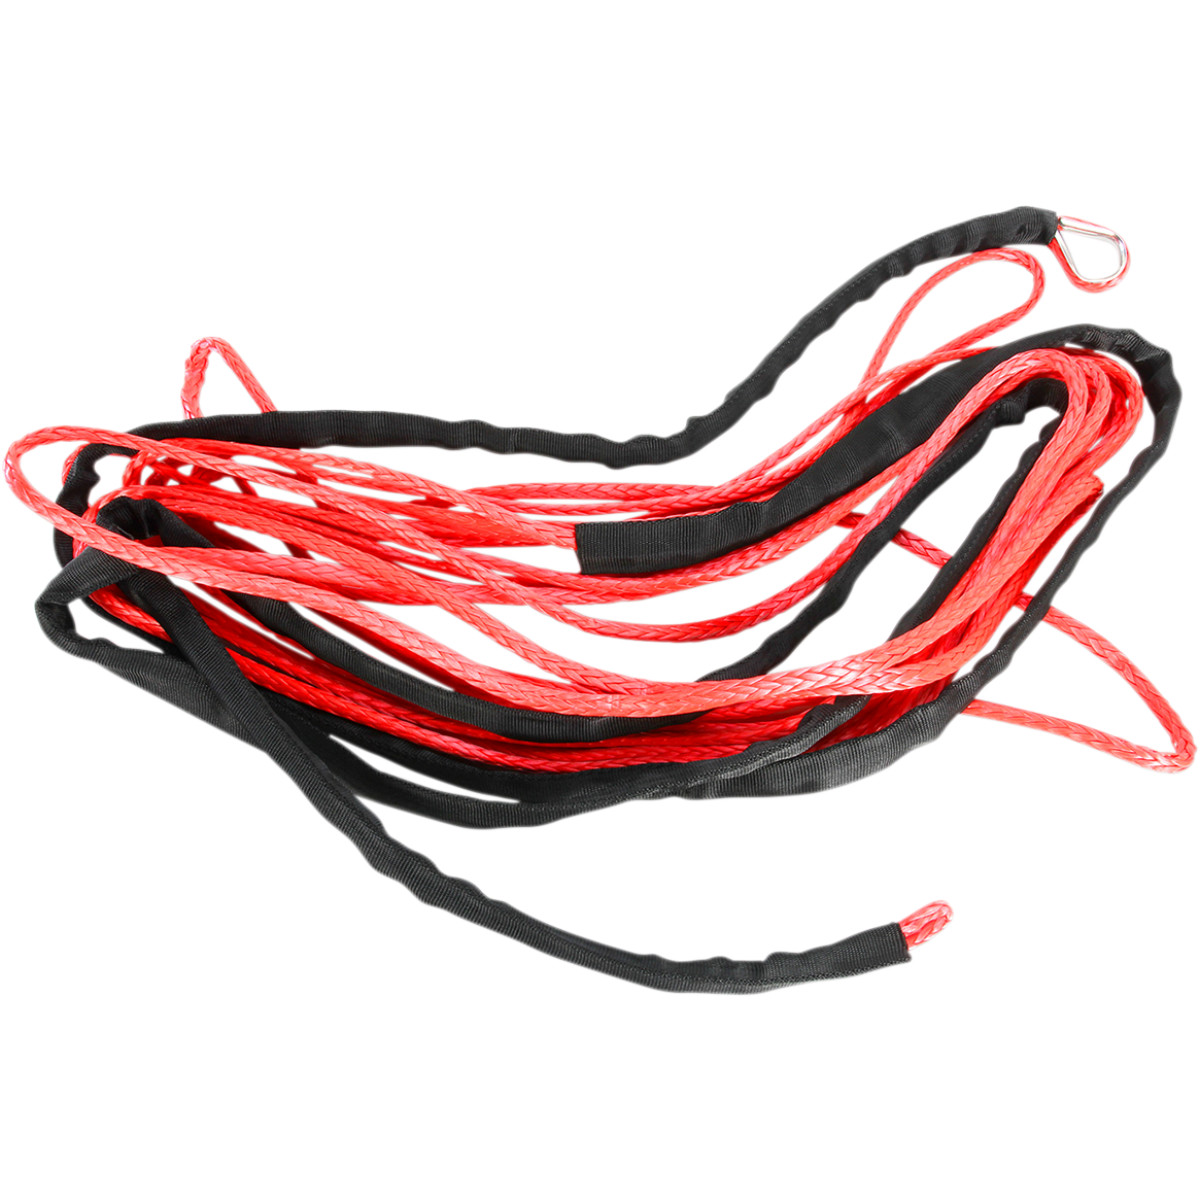 Syntetické lano Moose 6mm, 15,2m (červené)